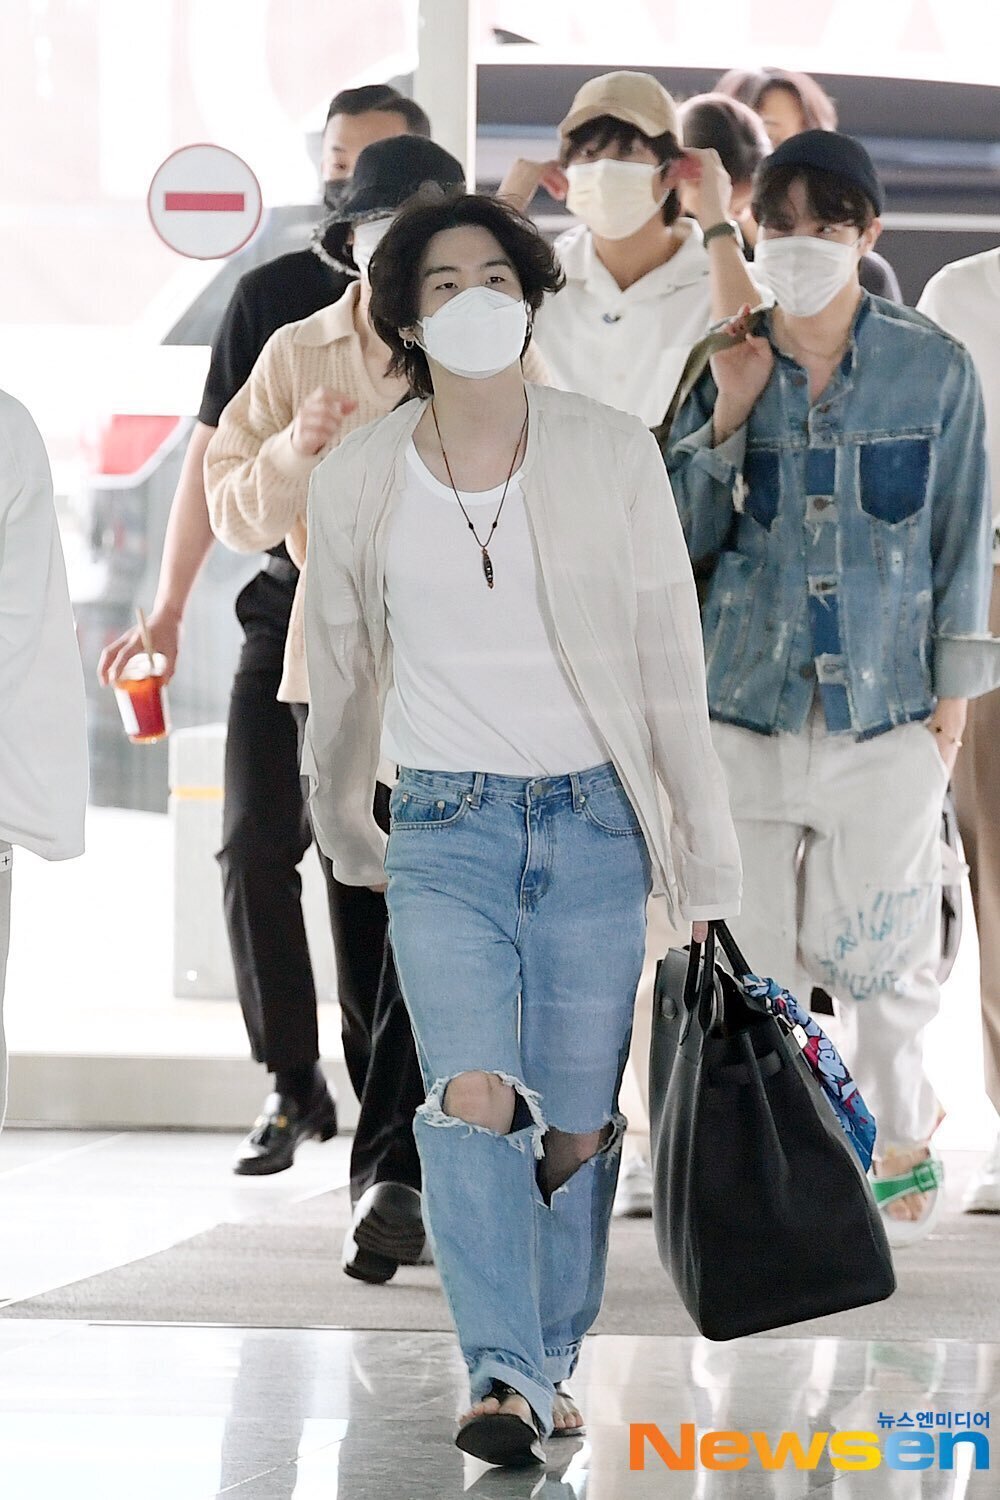 BTS Suga's airport fashion looks